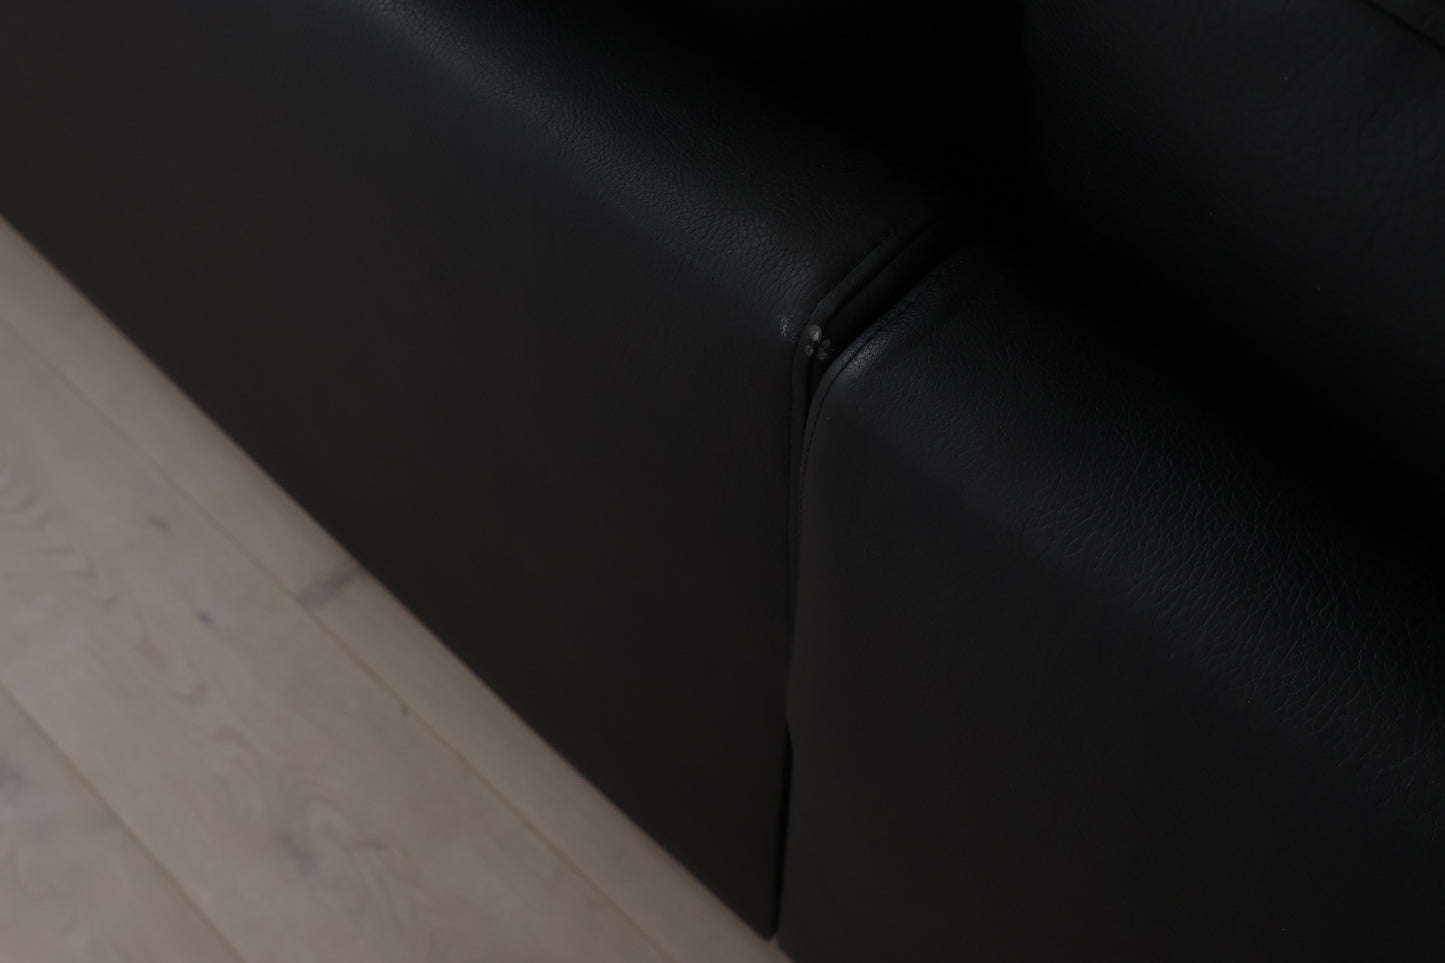 Nyrenset | Solna u-sofa med sjeselong i resirkulert skinn